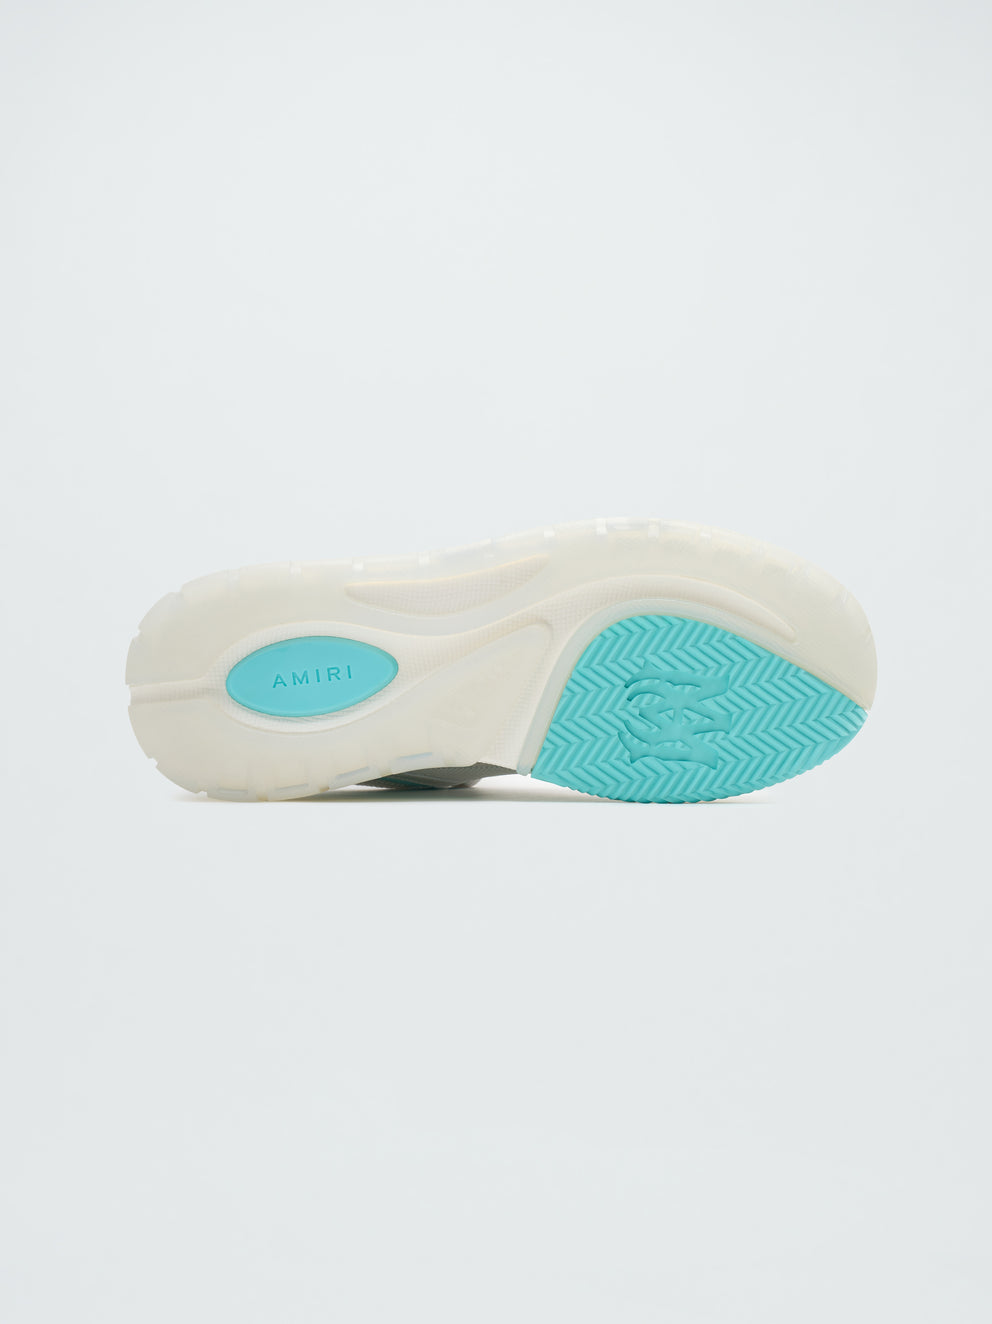 Zapatillas Amiri Ma-1 Hombre Blancas Azules | 2786OELHQ